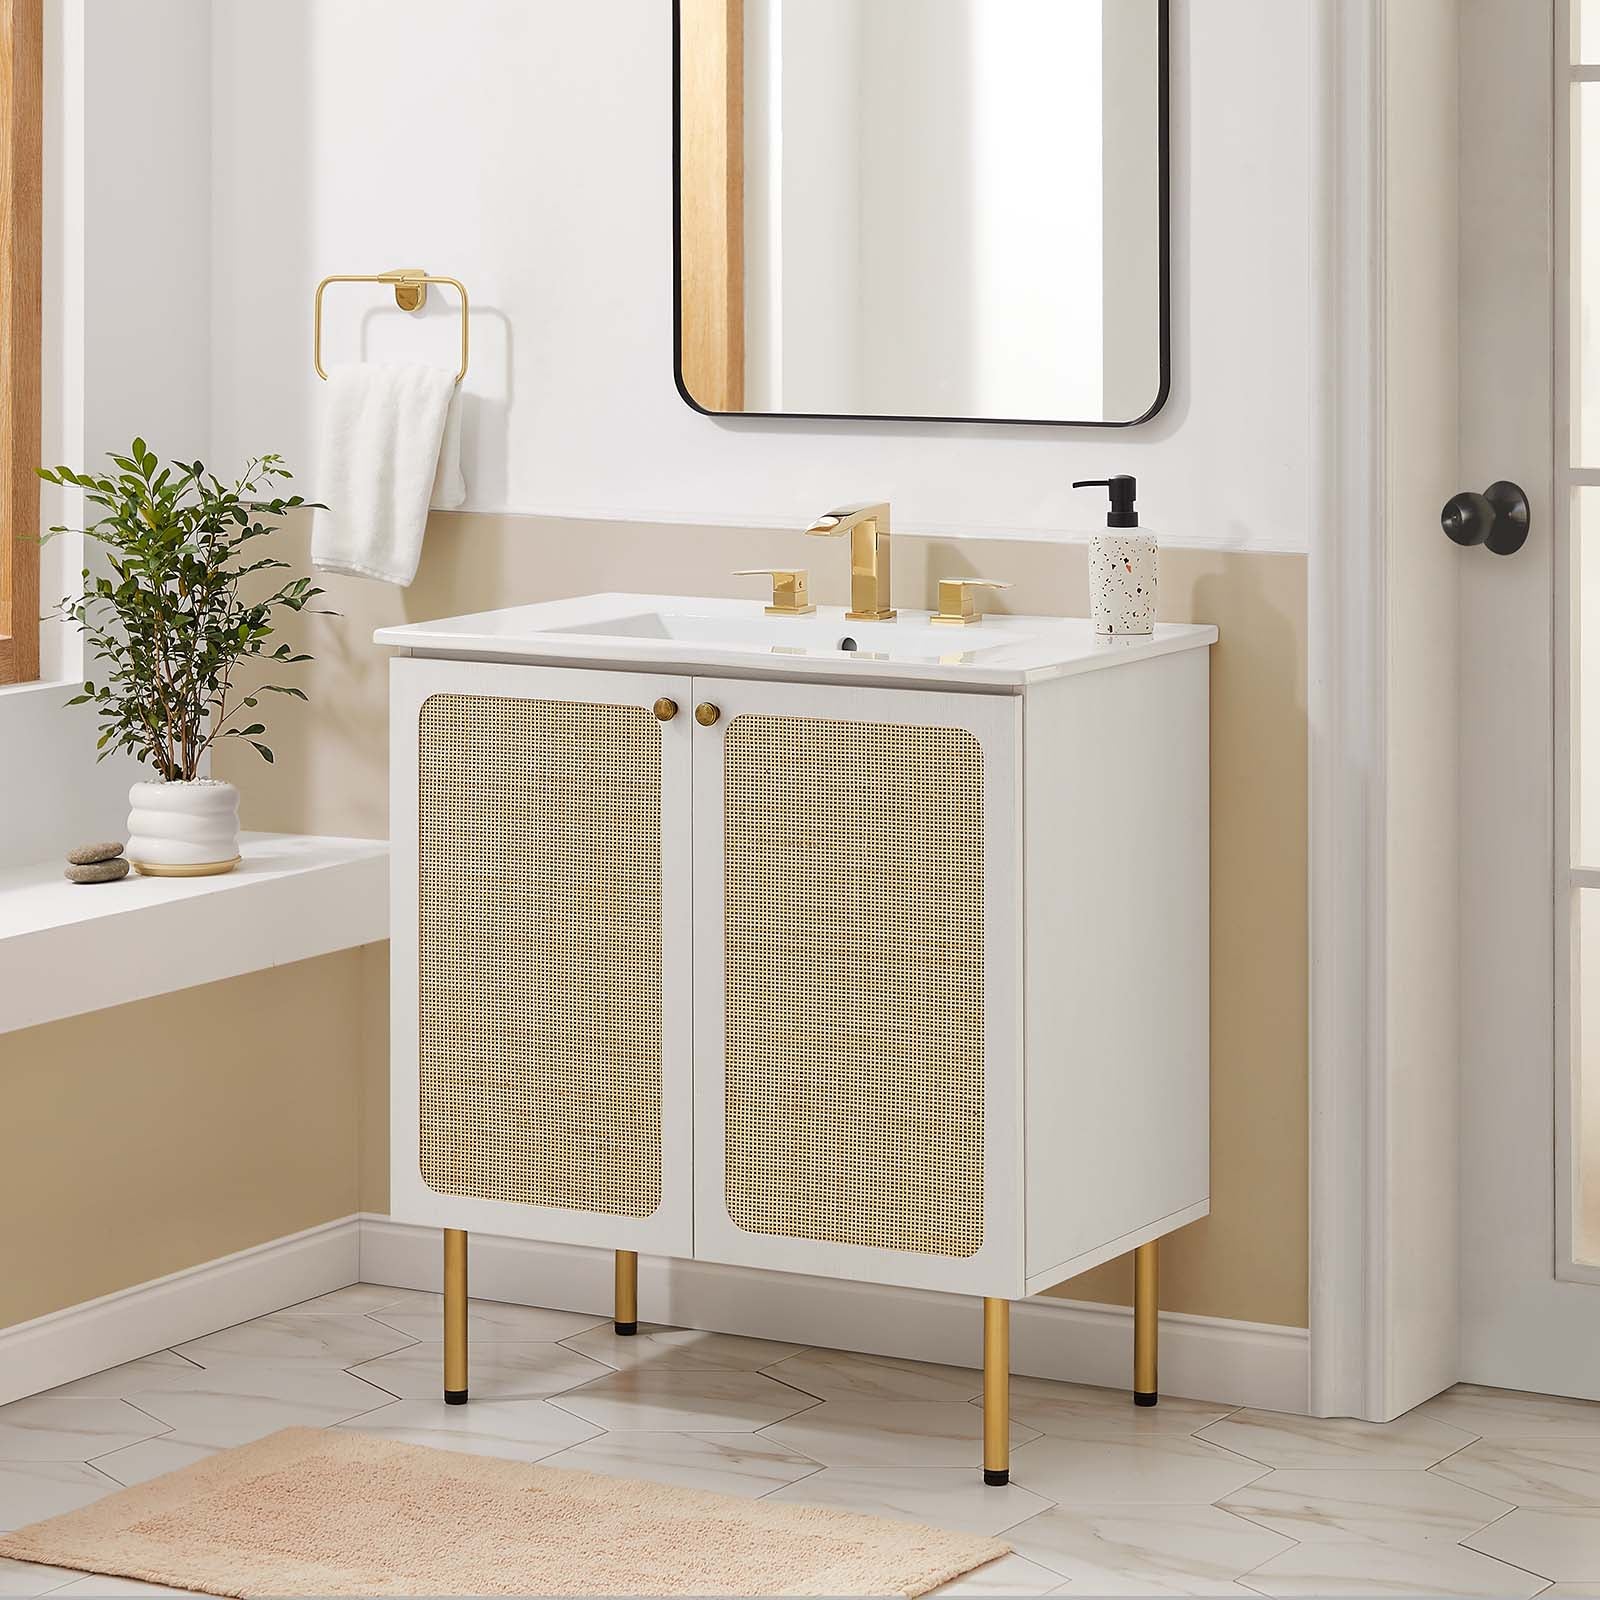 Chaucer 30" Bathroom Vanity-Bathroom Vanity-Modway-Wall2Wall Furnishings